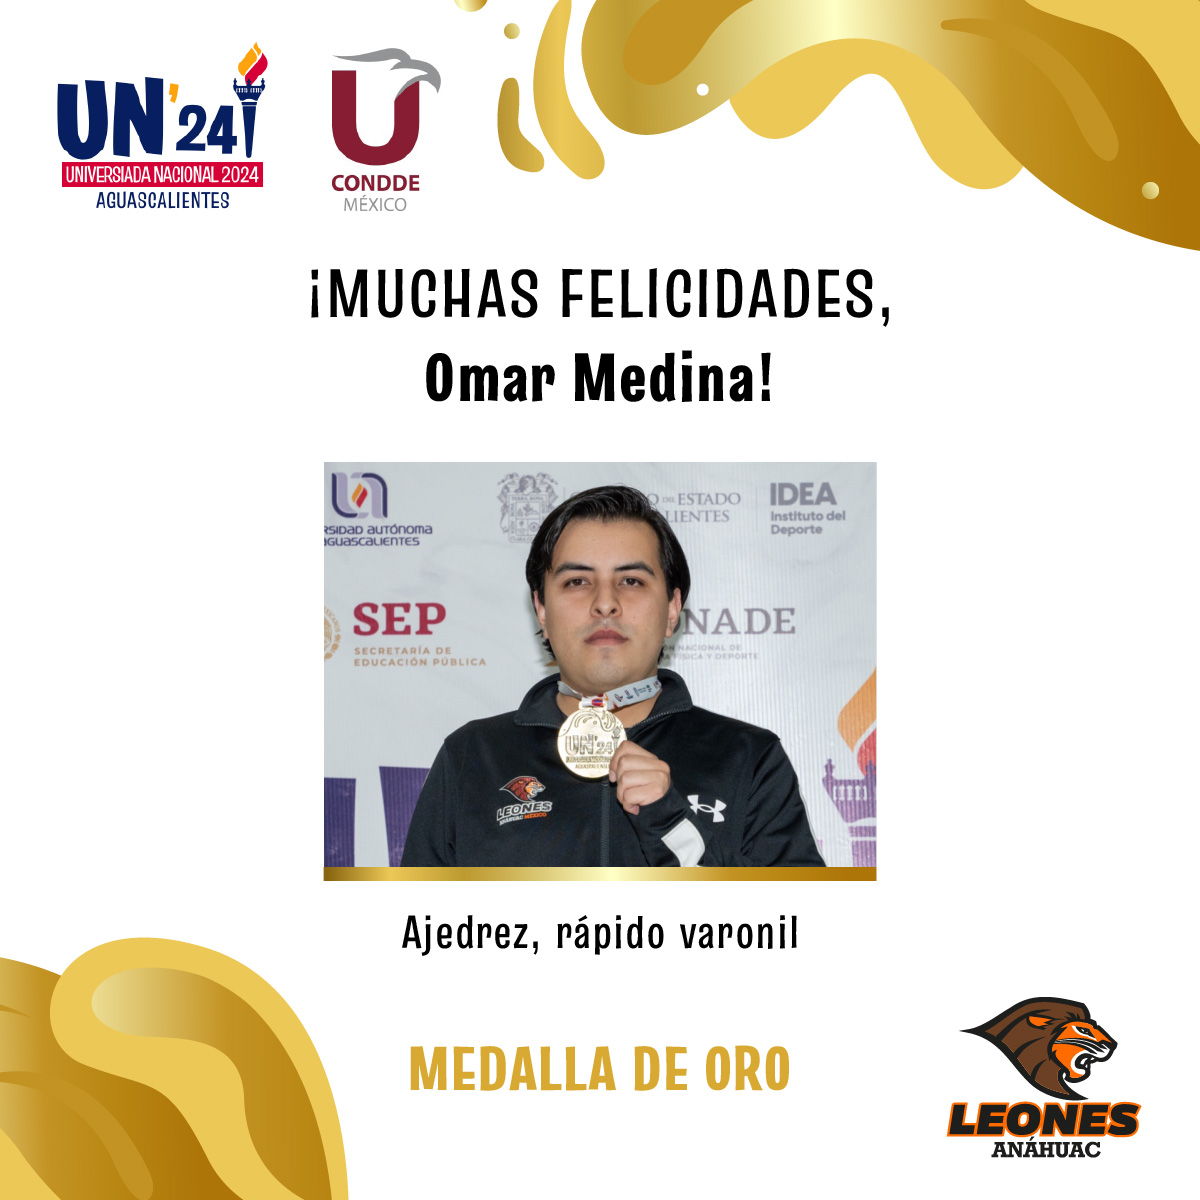 #VamosLeones ¡Medalla de oro! 🥇🦁 Omar Medina destacó en la @UniversiadaMX al llevarse la medalla de oro en Ajedrez, rápido varonil♟️¡Muchas felicidades! 🙌🏼🙌🏼 #UniversiadaNacional2024 @ConddeMx